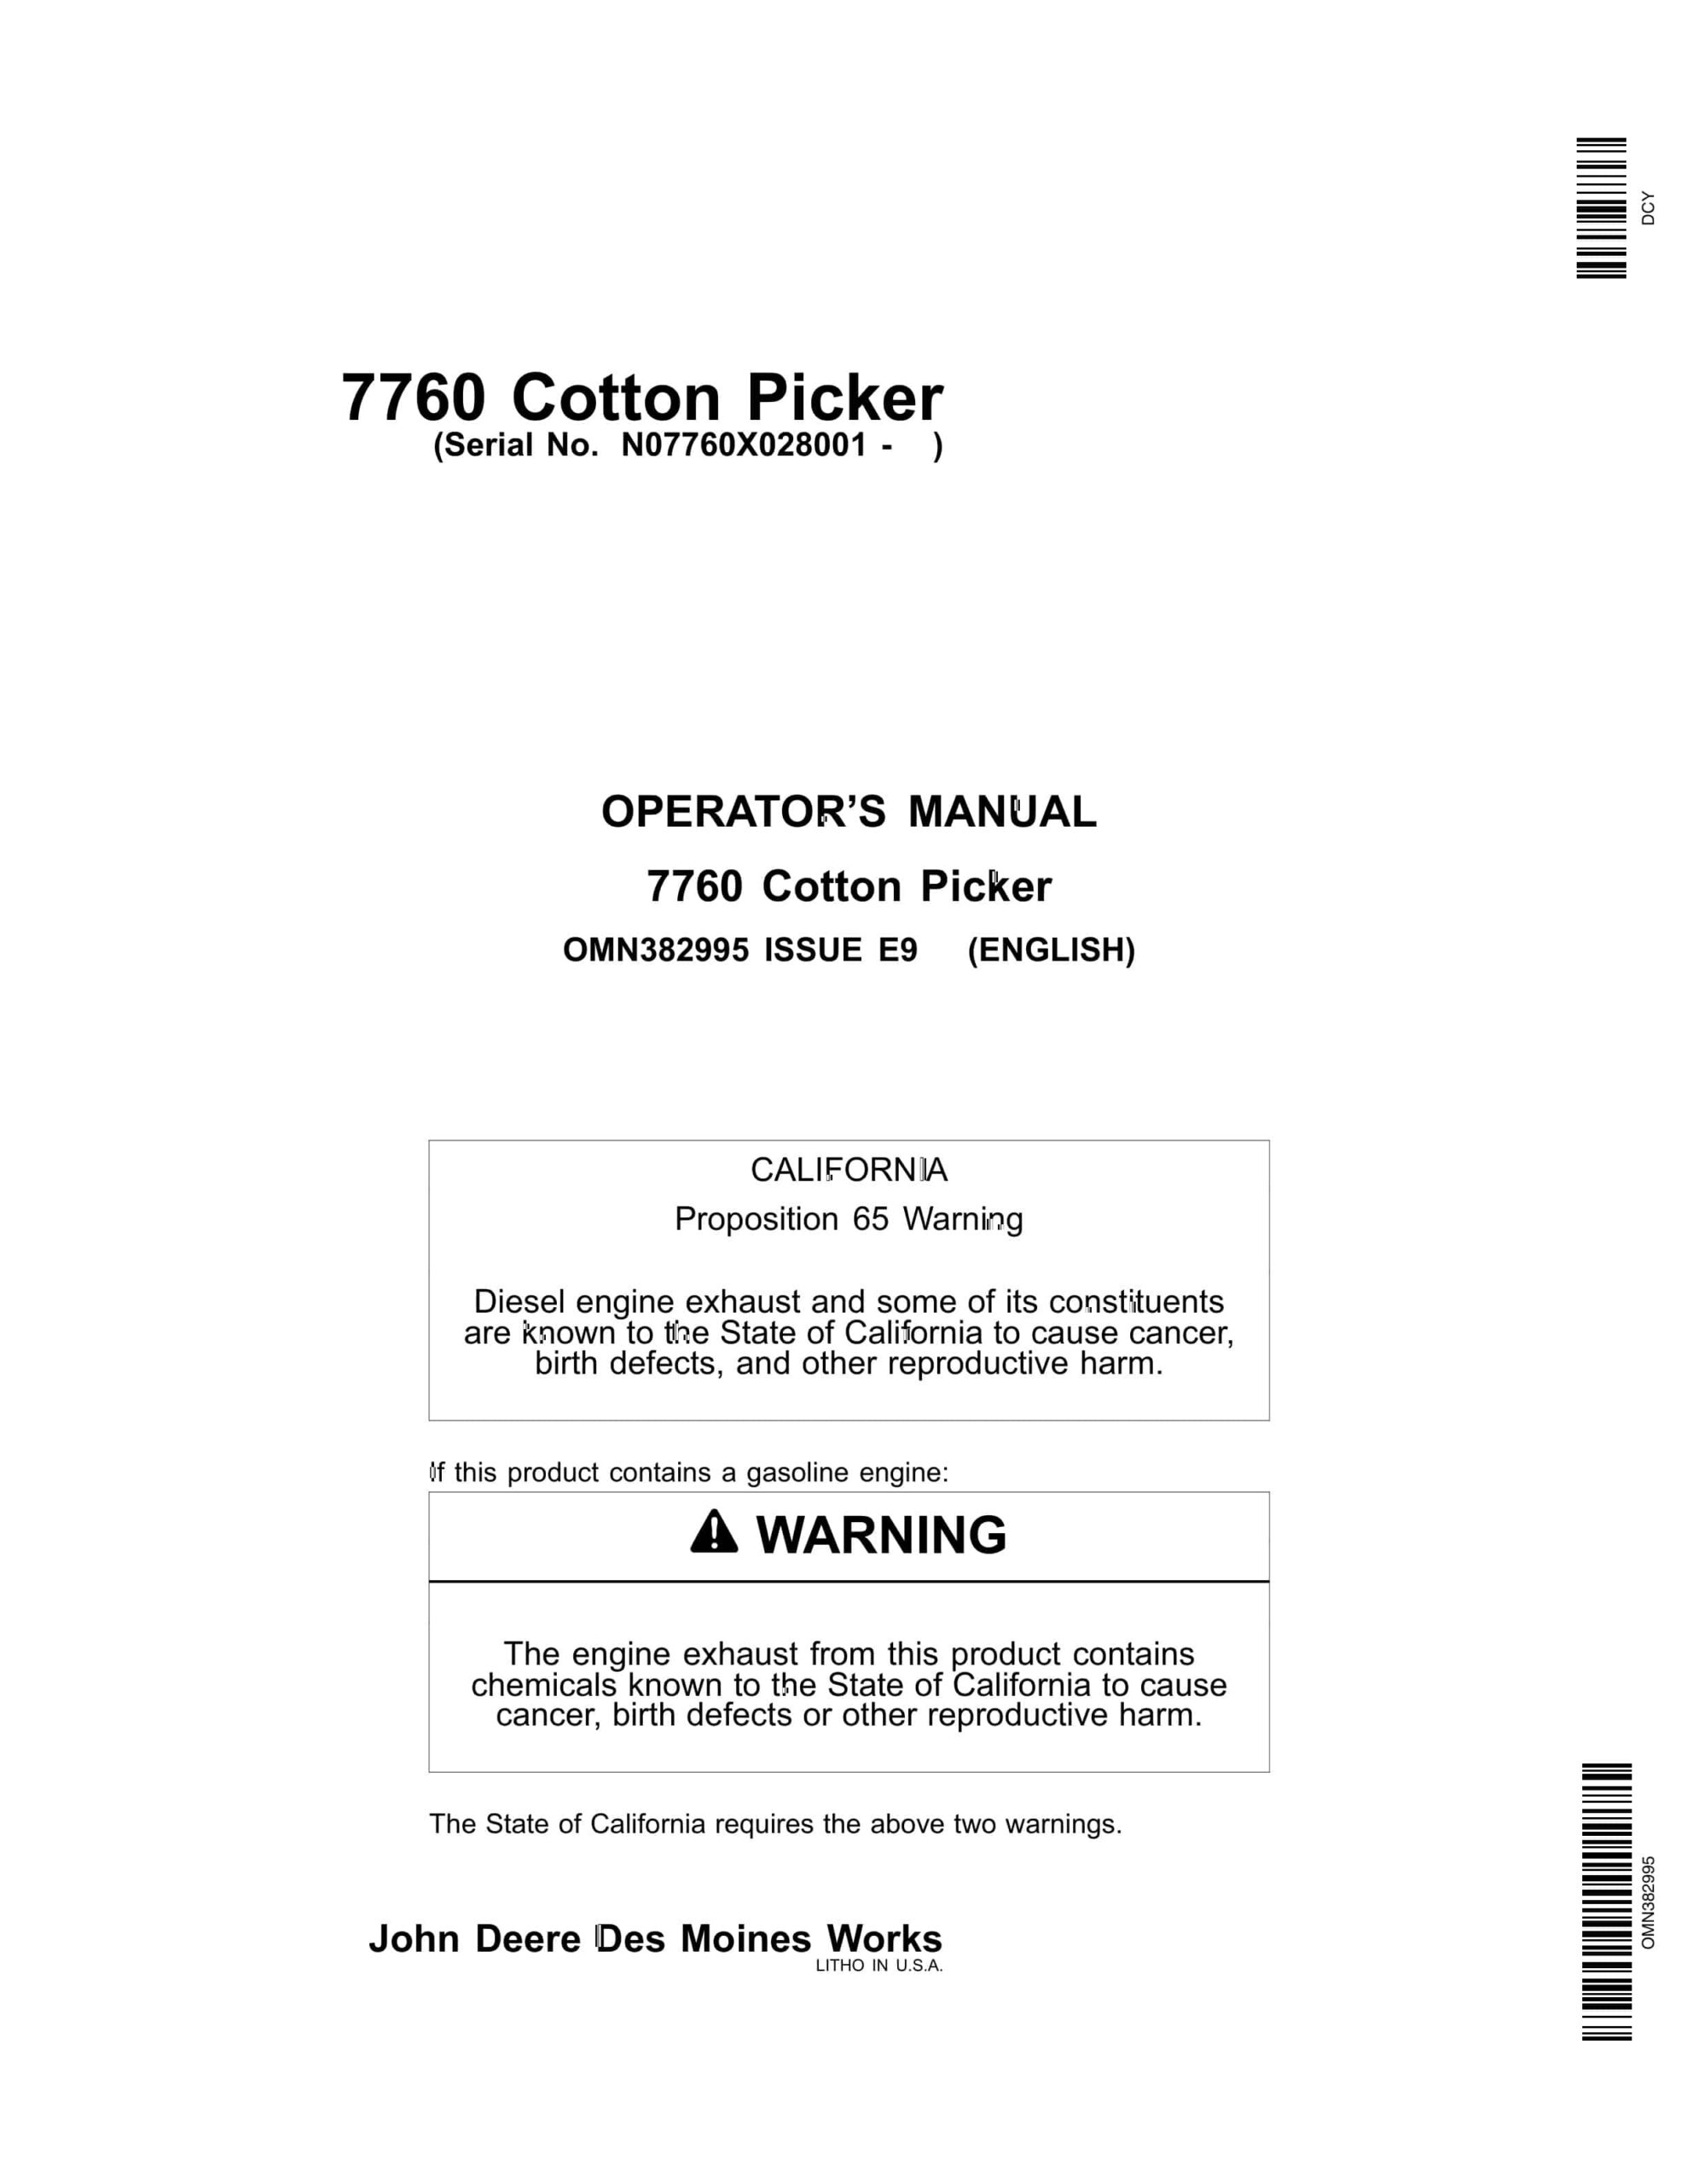 John Deere 7760 COTTON PICKER Operator Manual OMN382995-1